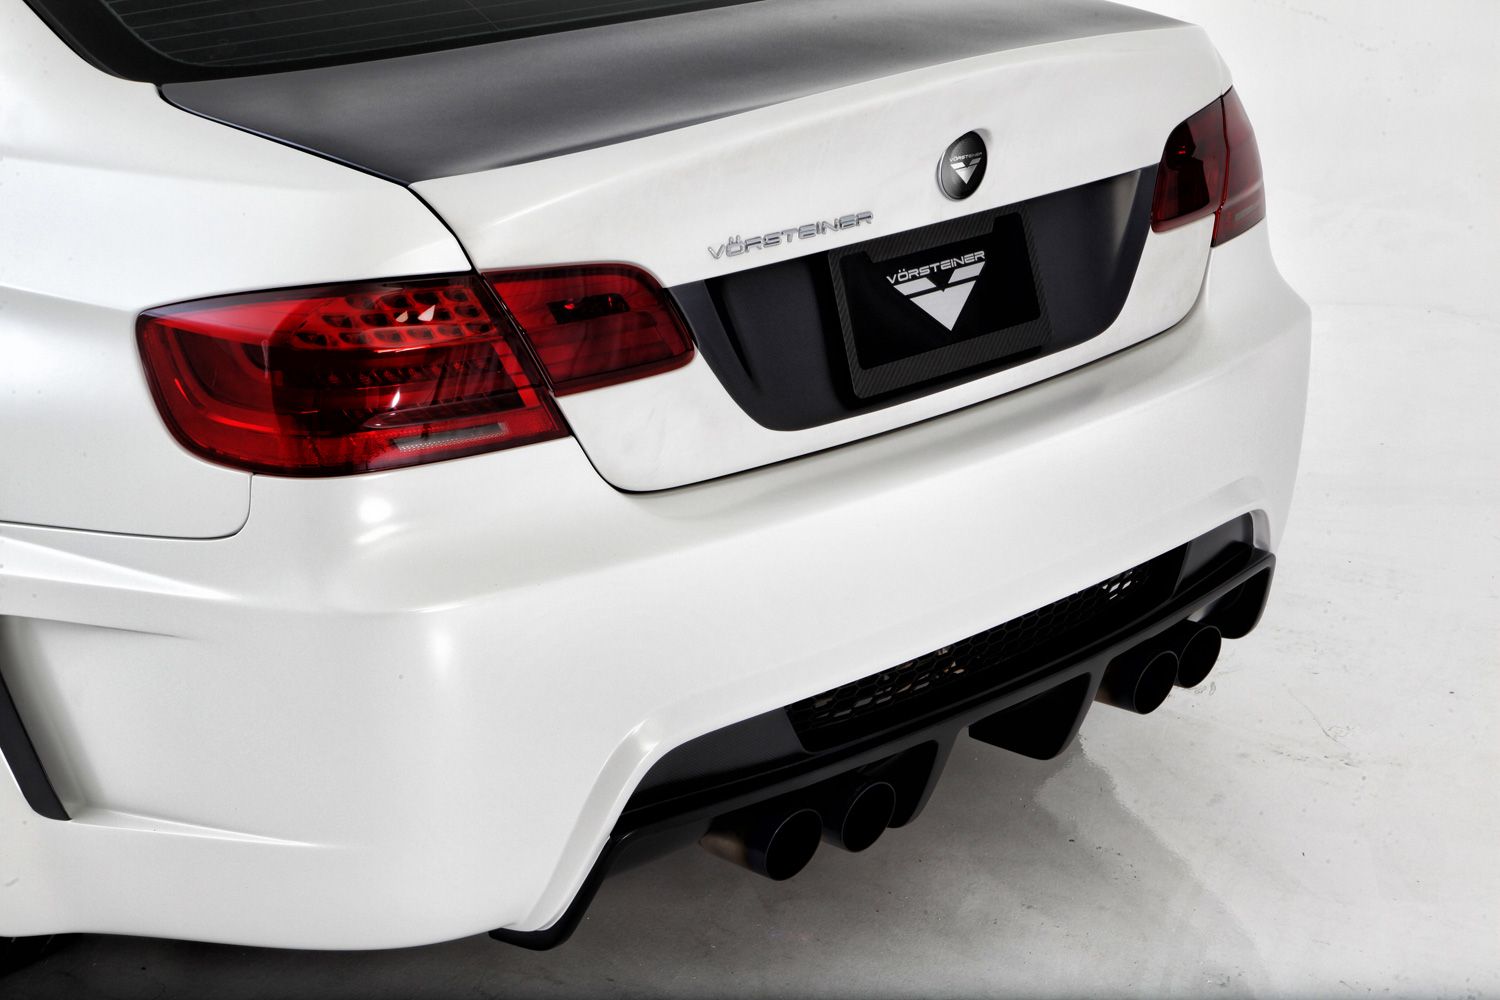 2012 BMW M3 GTRS5 Limited Edition by Vorsteiner 